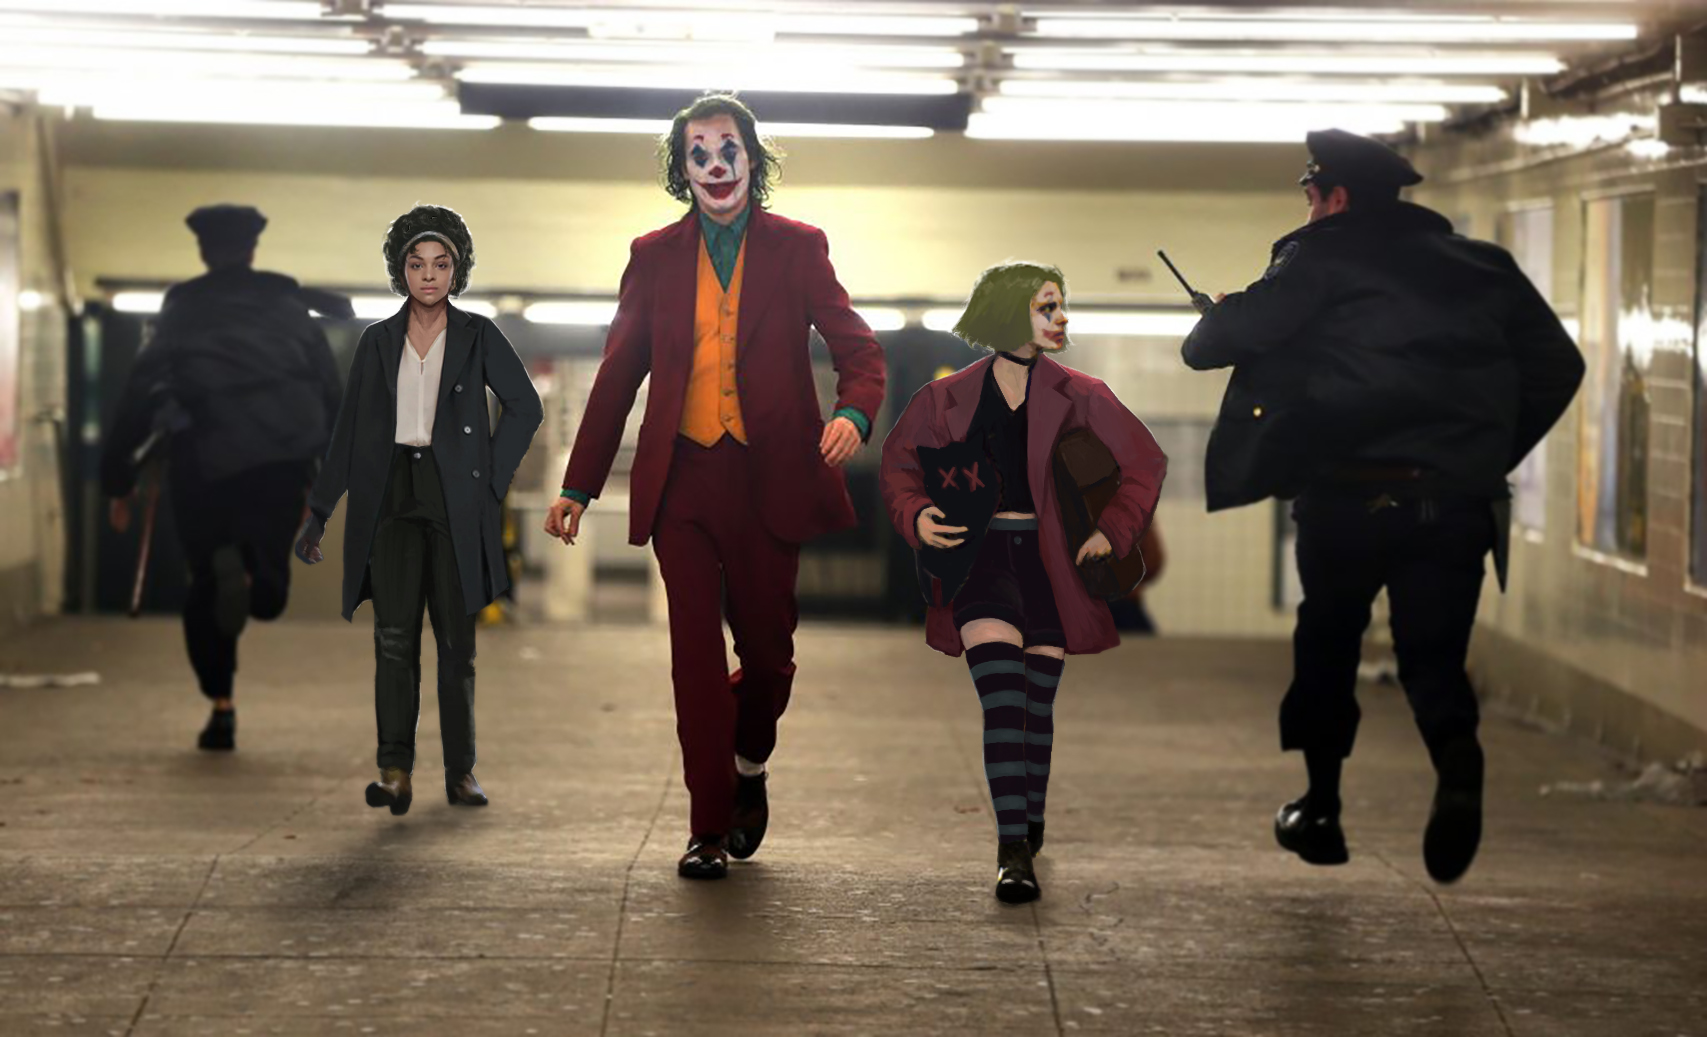 Joker - character concept art